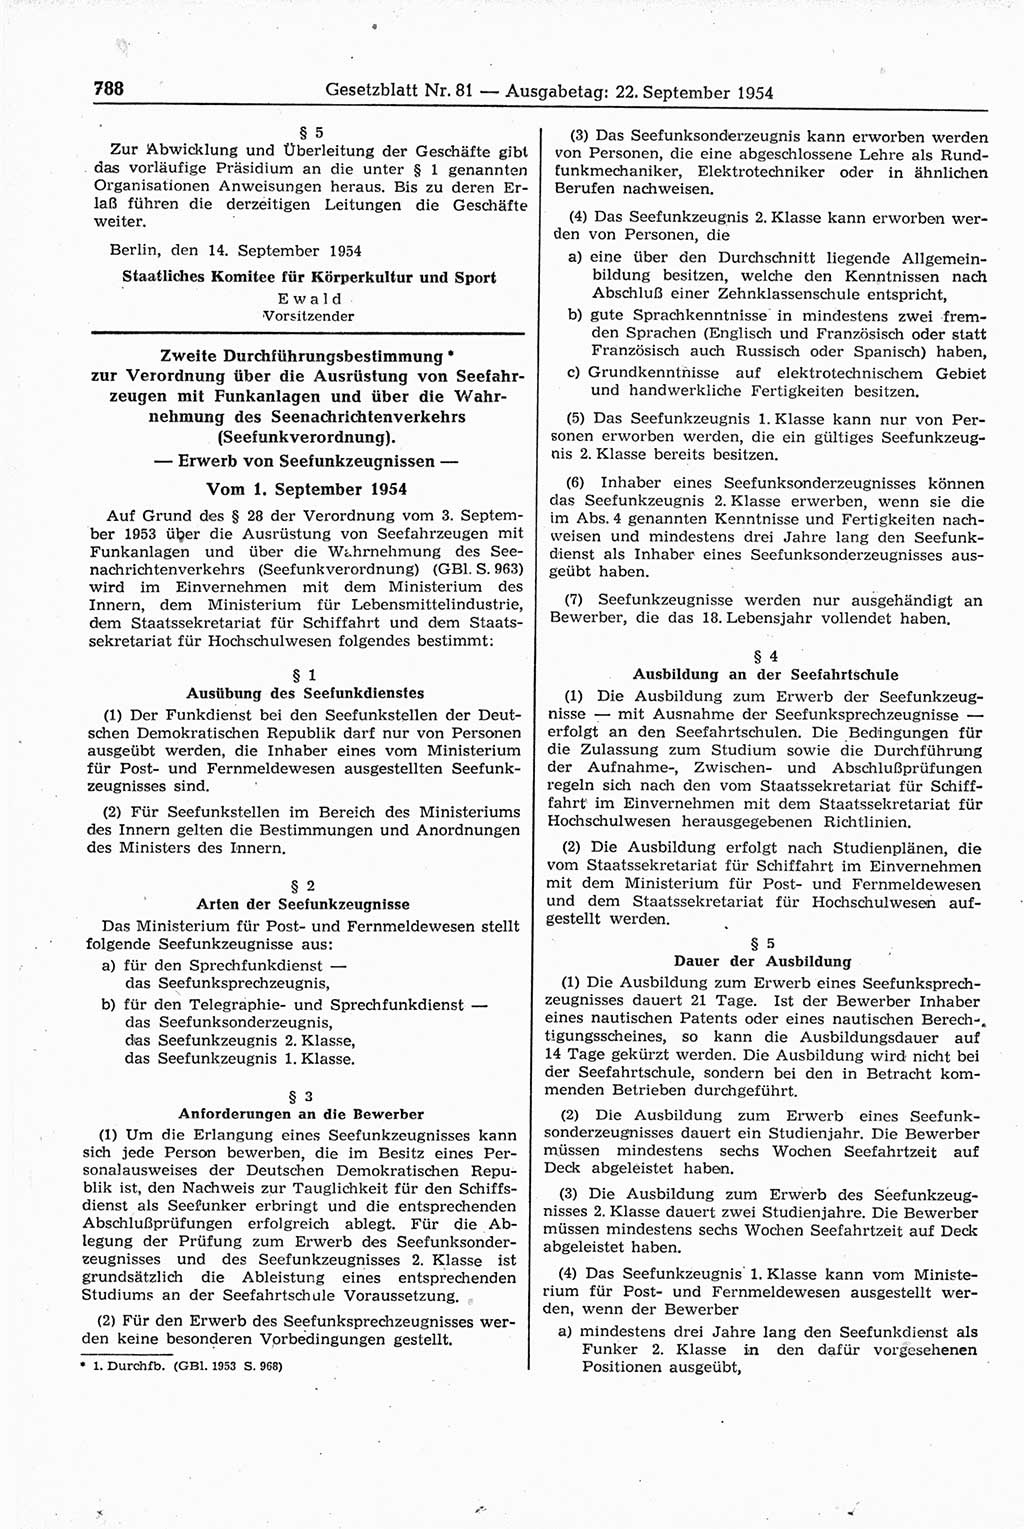 Gesetzblatt (GBl.) der Deutschen Demokratischen Republik (DDR) 1954, Seite 788 (GBl. DDR 1954, S. 788)